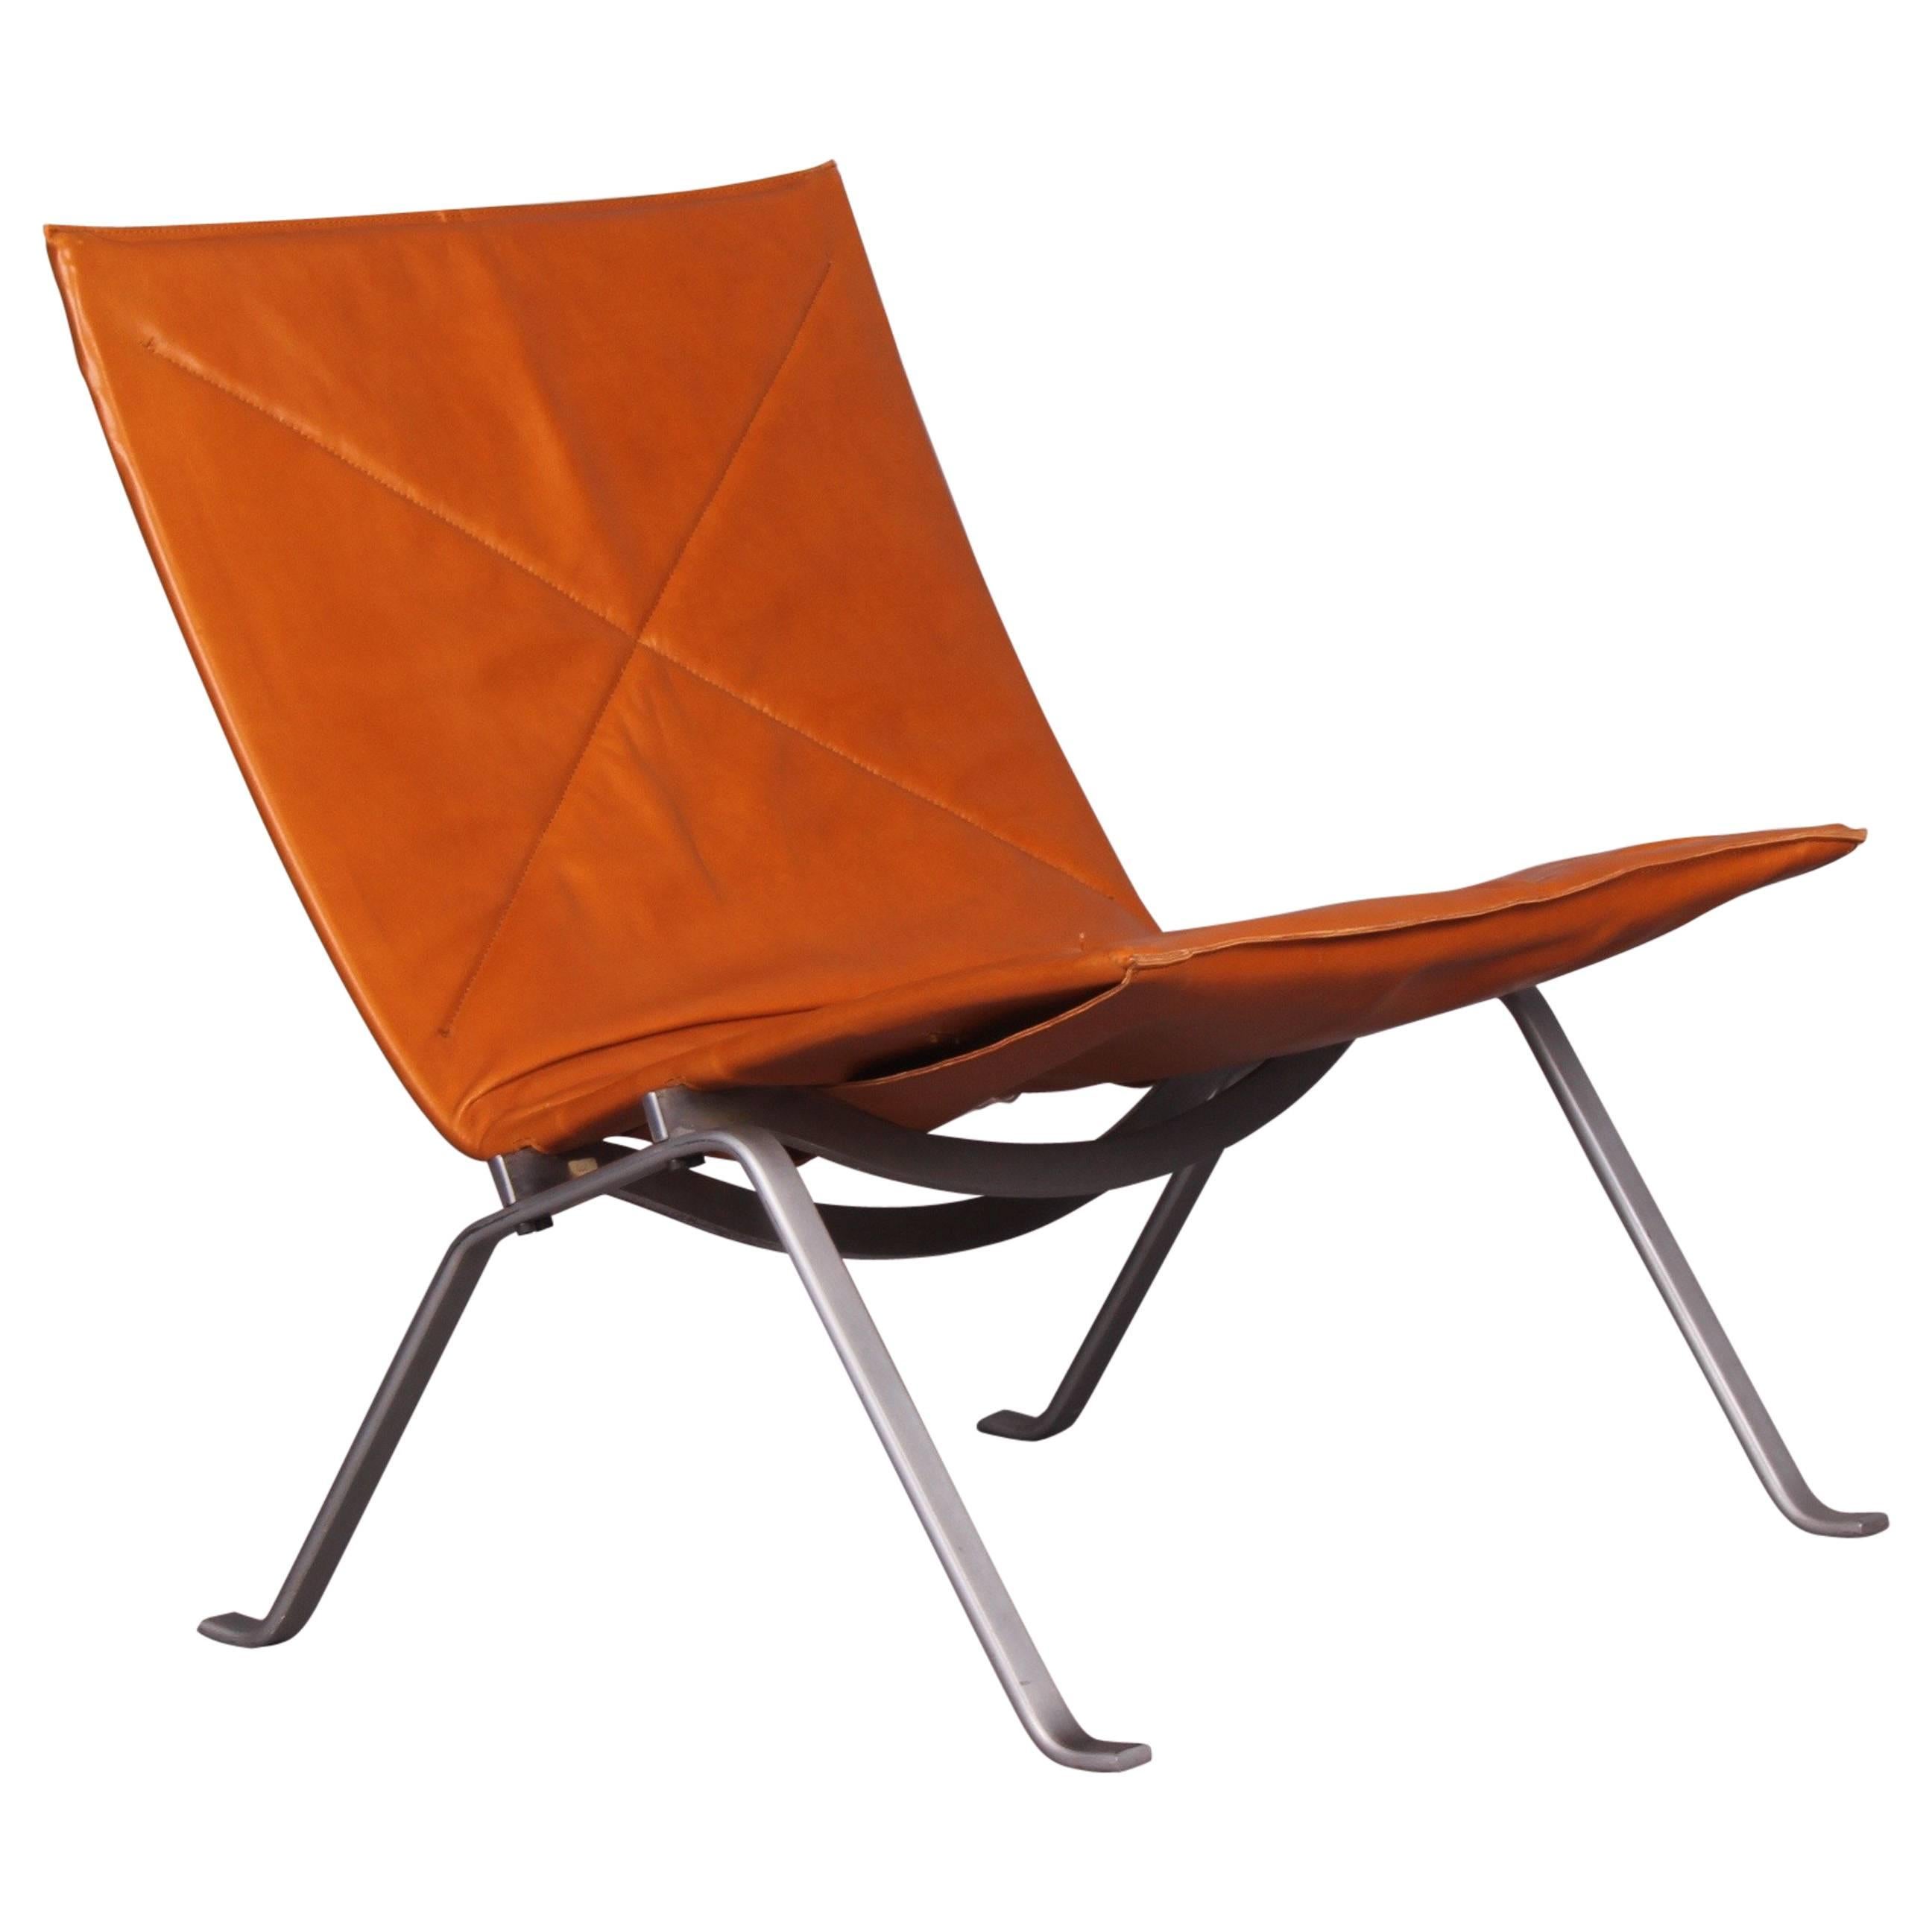 Lounge Chair by Poul Kjaerholm Pk 22 ed Christensen